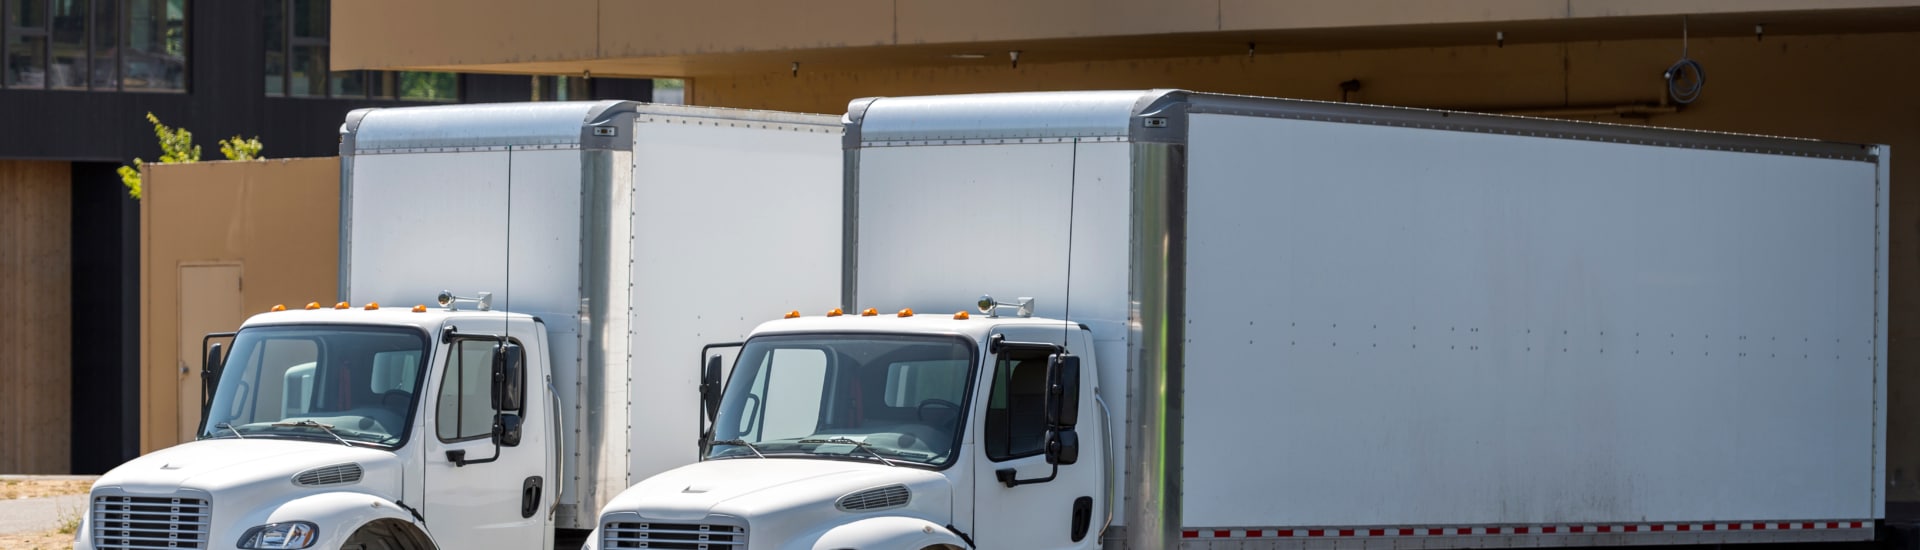 Requisitos legales que debe tener un conductor de un camión comercial